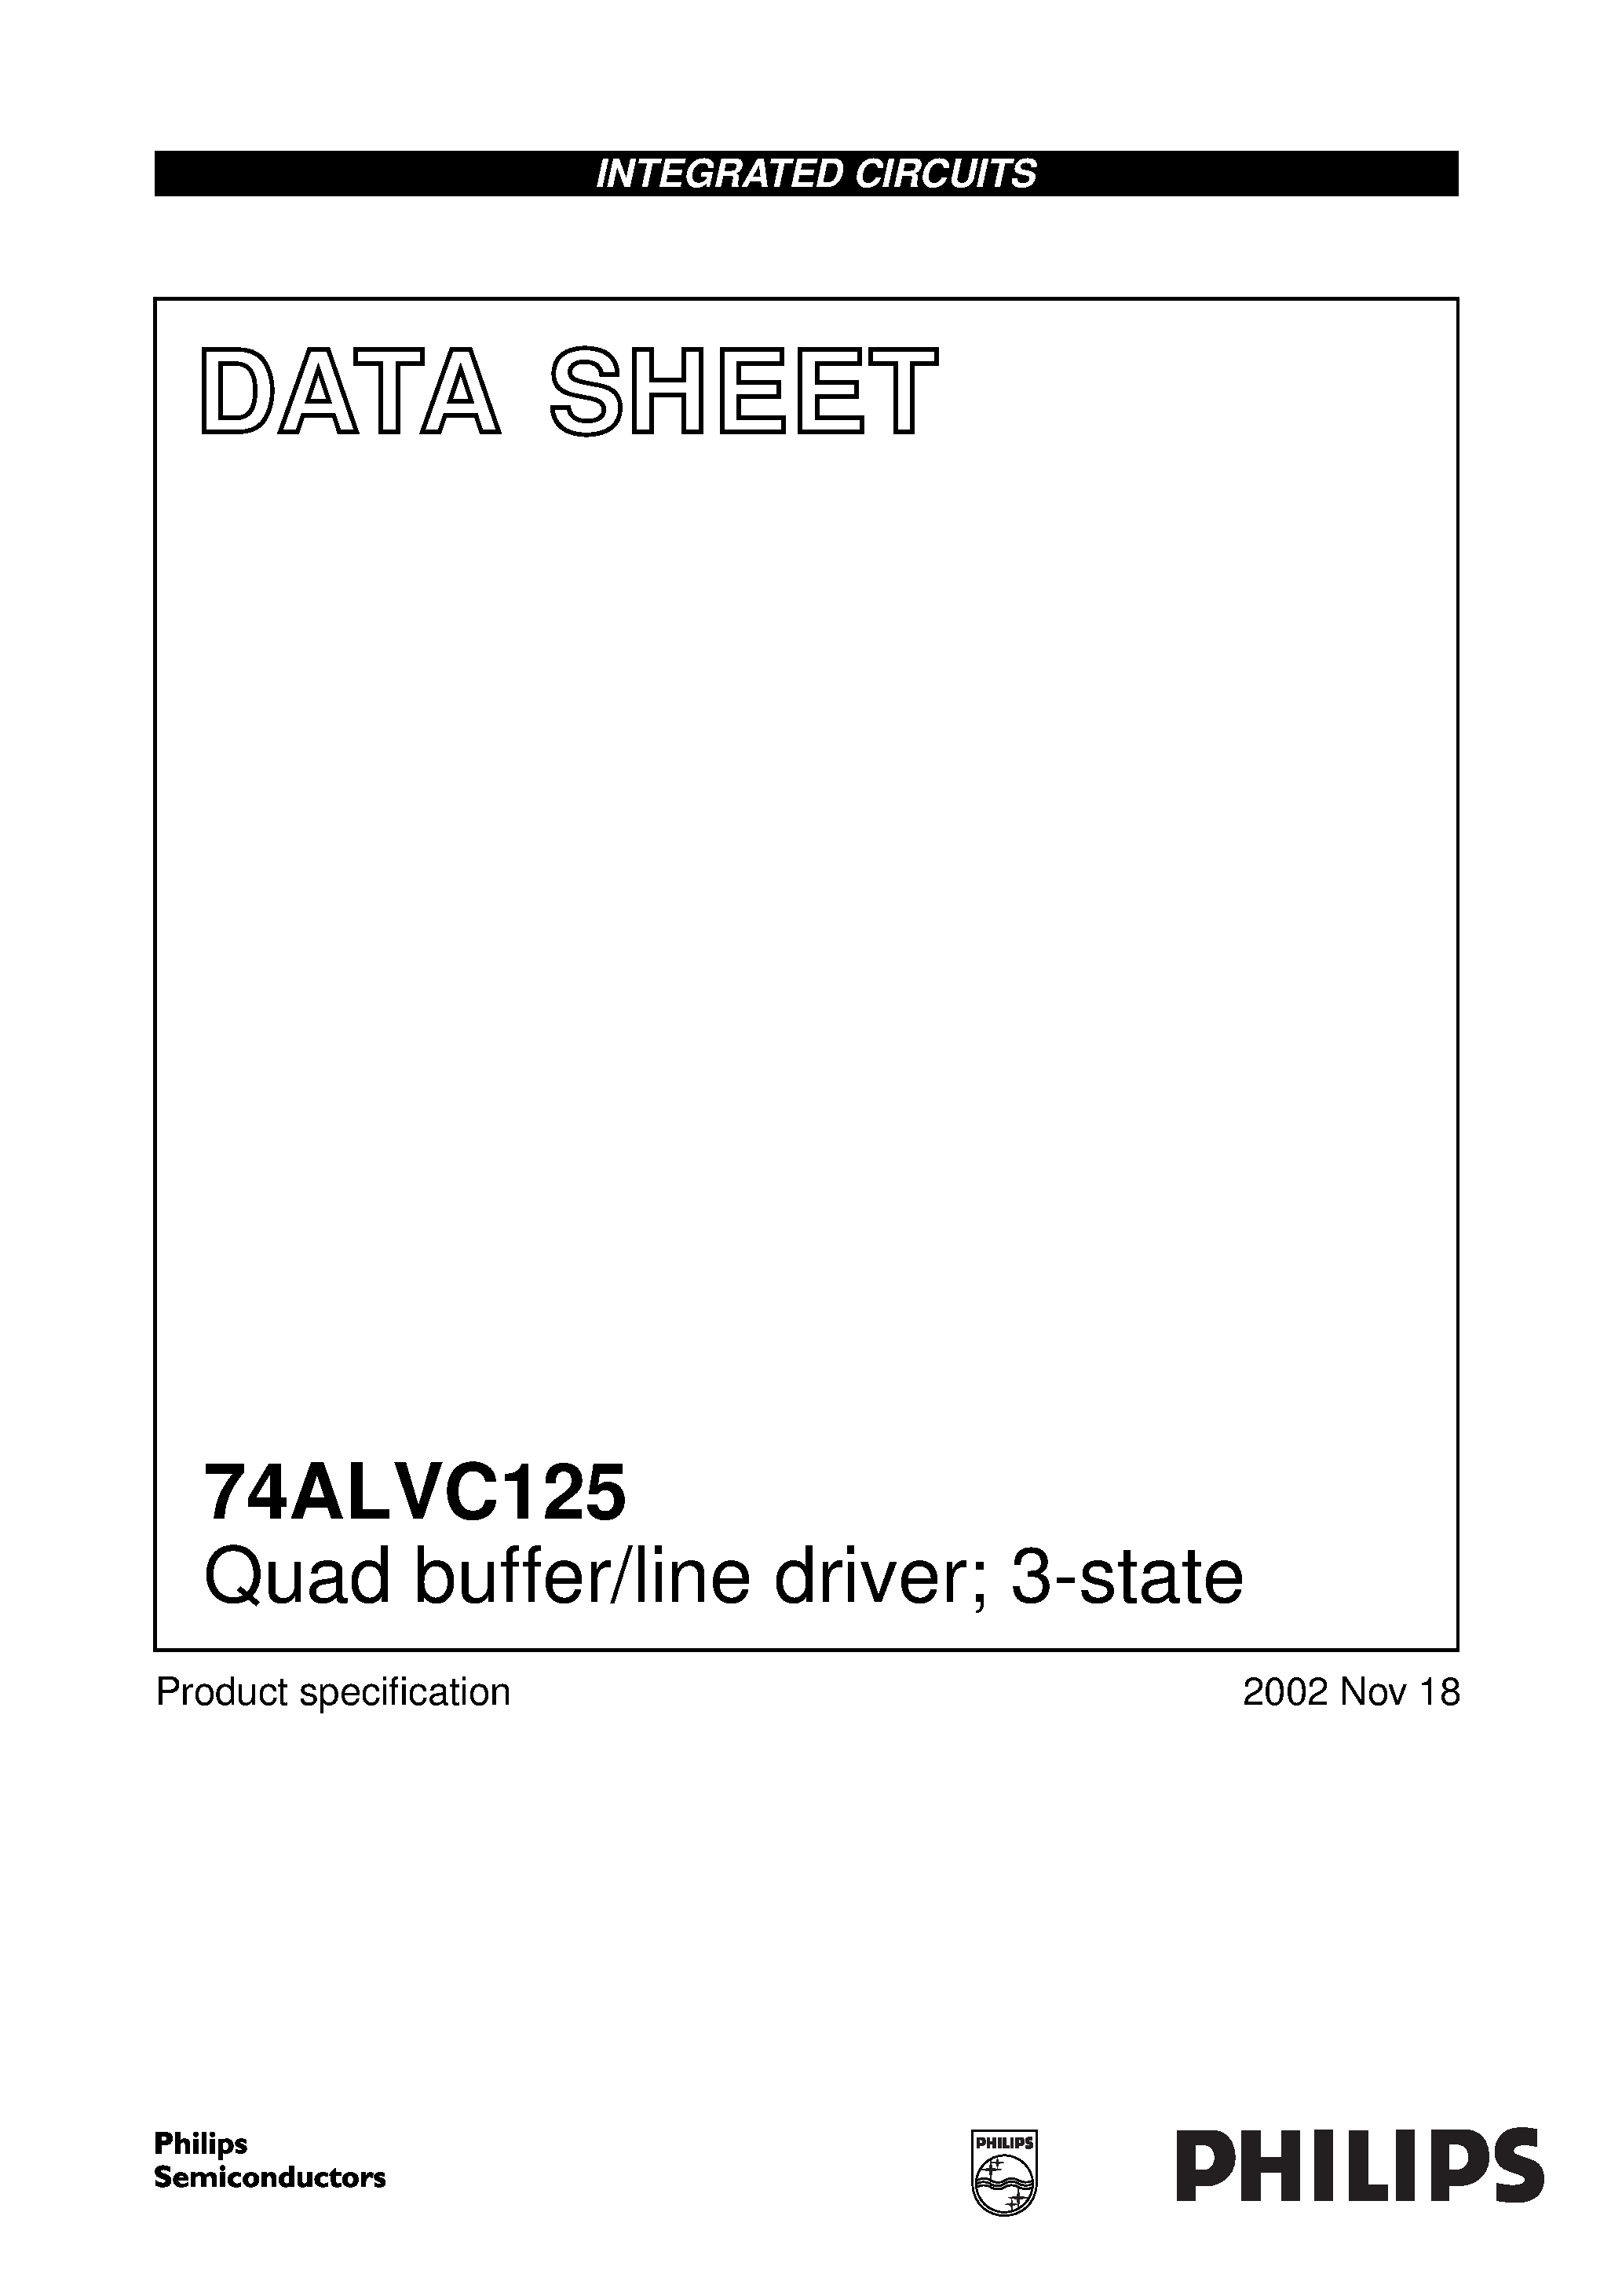 Даташит 74ALVC125 - Quad buffer/line driver; 3-state страница 1